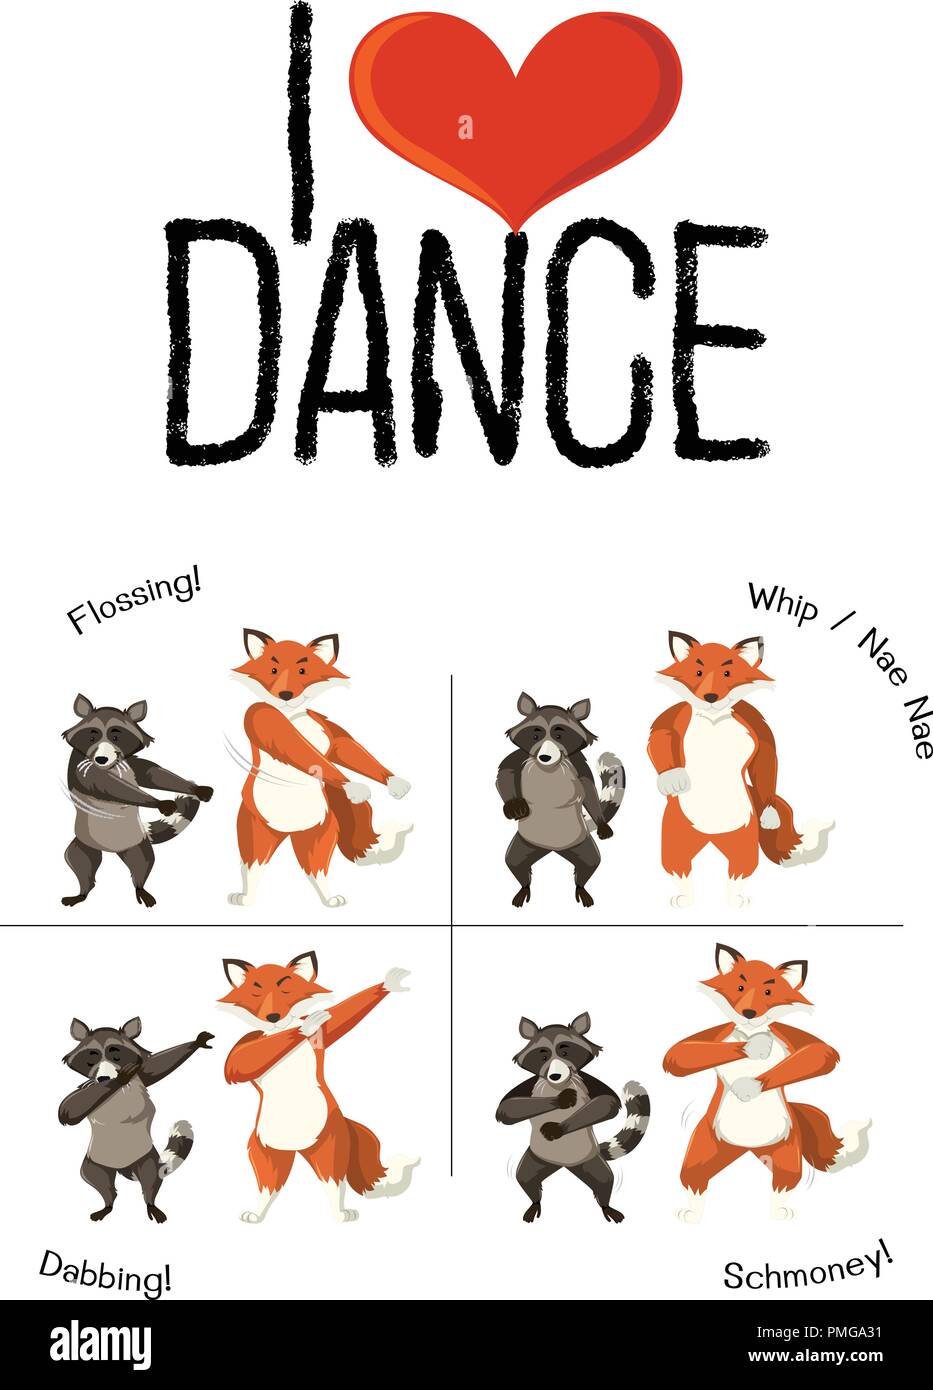 Tiere und Tanz bewegen Abbildung Stock Vektor